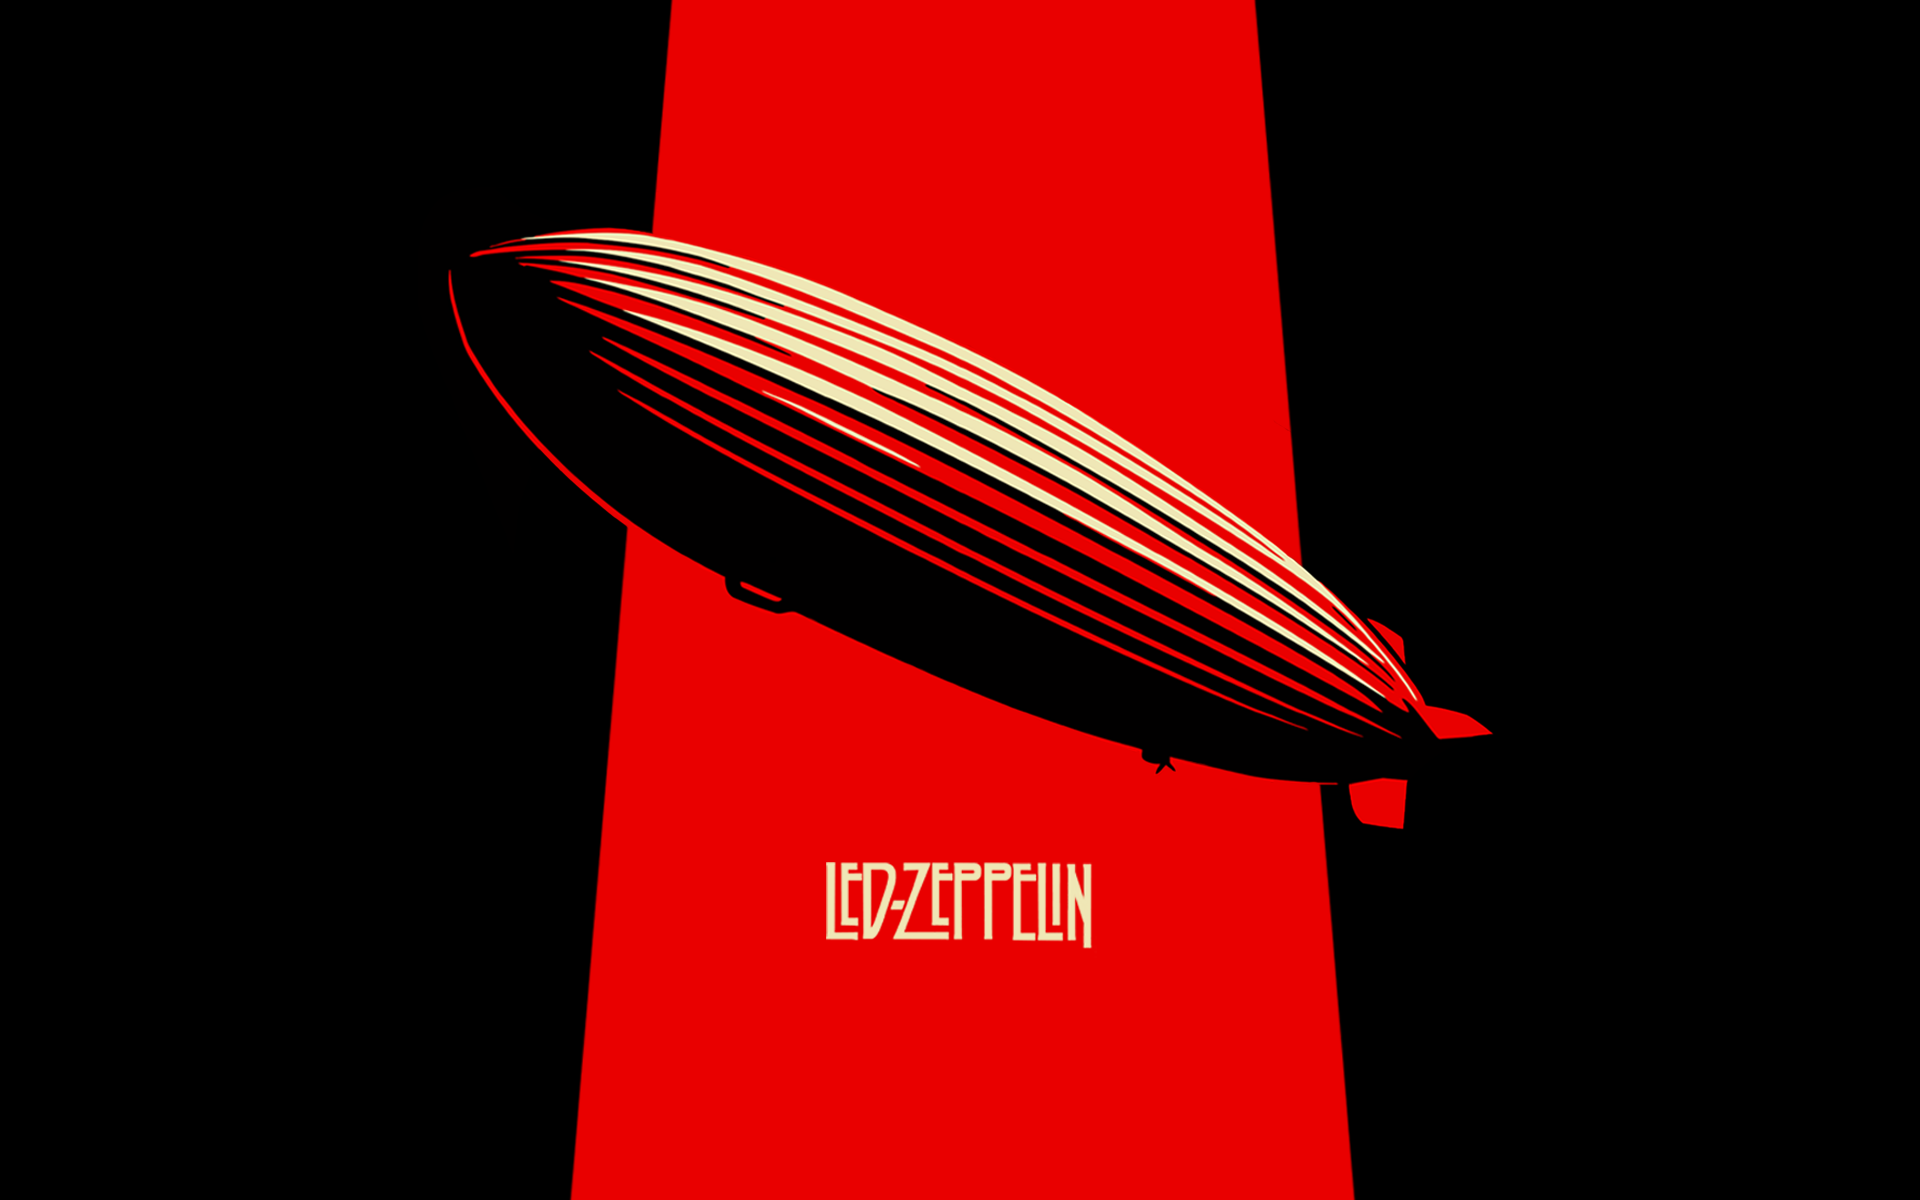 Led zeppelin wallpaper, Led zeppelin, Led zepplin